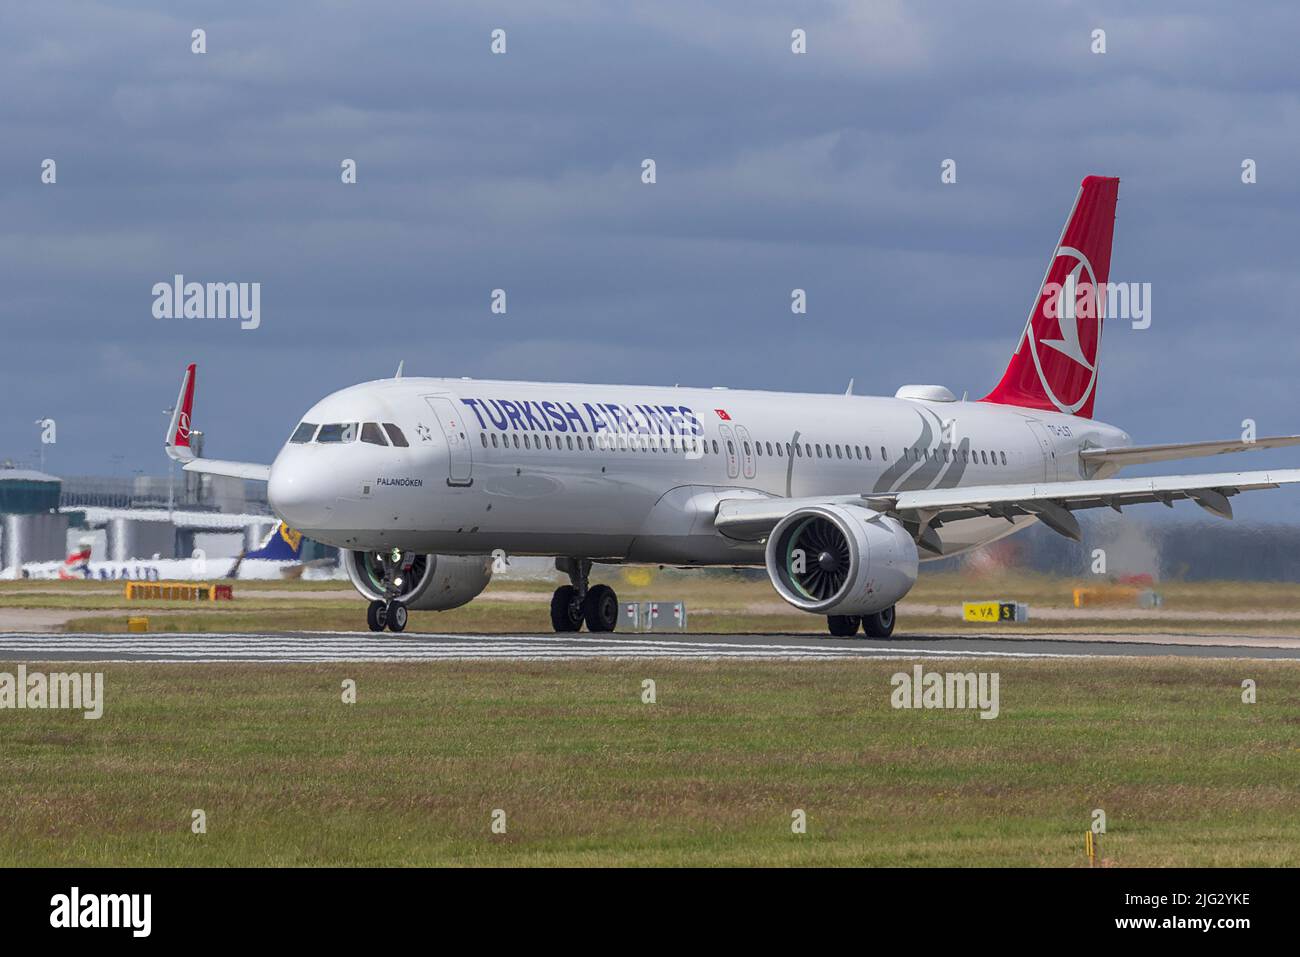 Turkish Airlines Airbus A321-271NX REG TC-LST à l'aéroport de Manchester. Banque D'Images